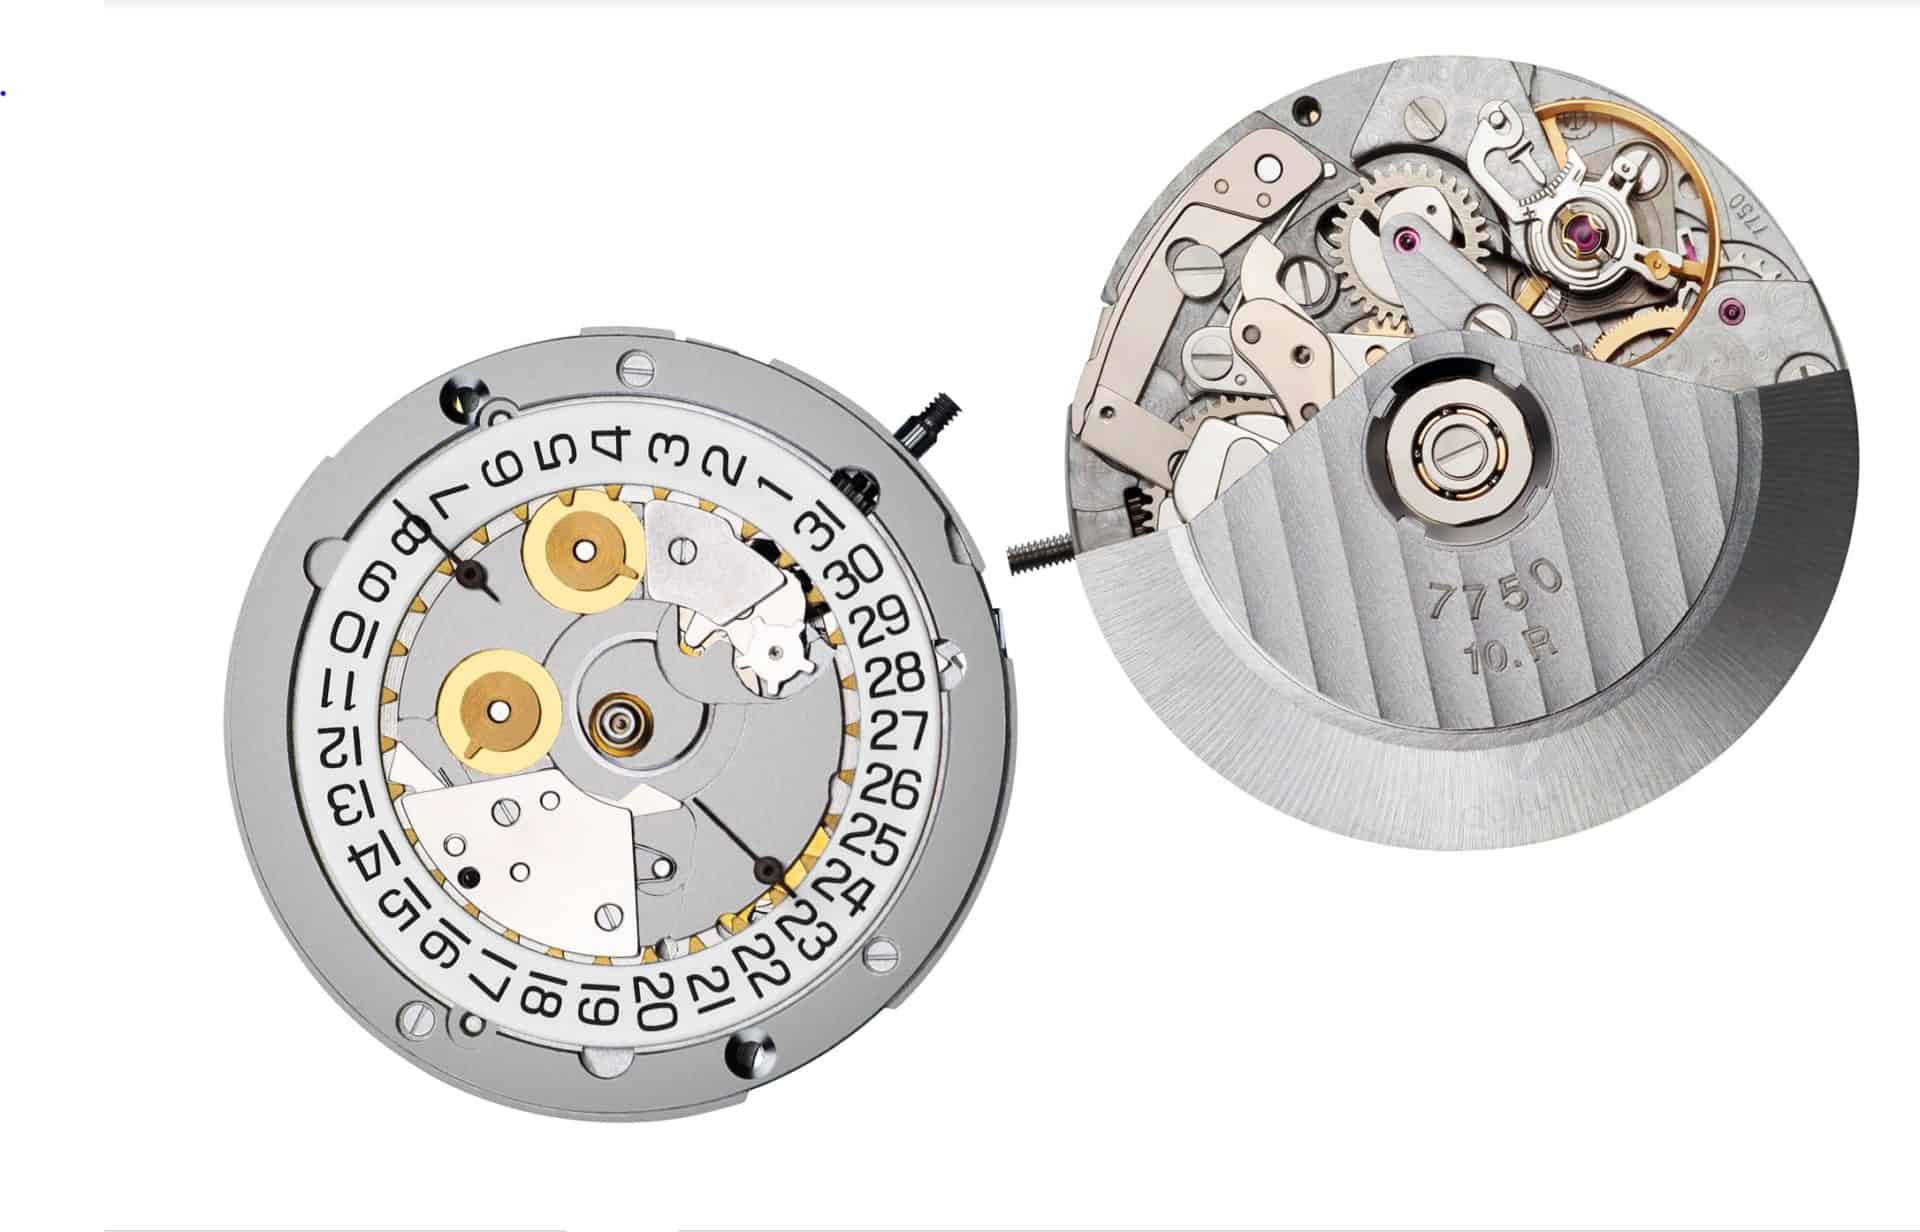 Das Werk 7750 ist ein Ebauches Uhrwerk-Klassiker von Valjoux, ETA Gruppe